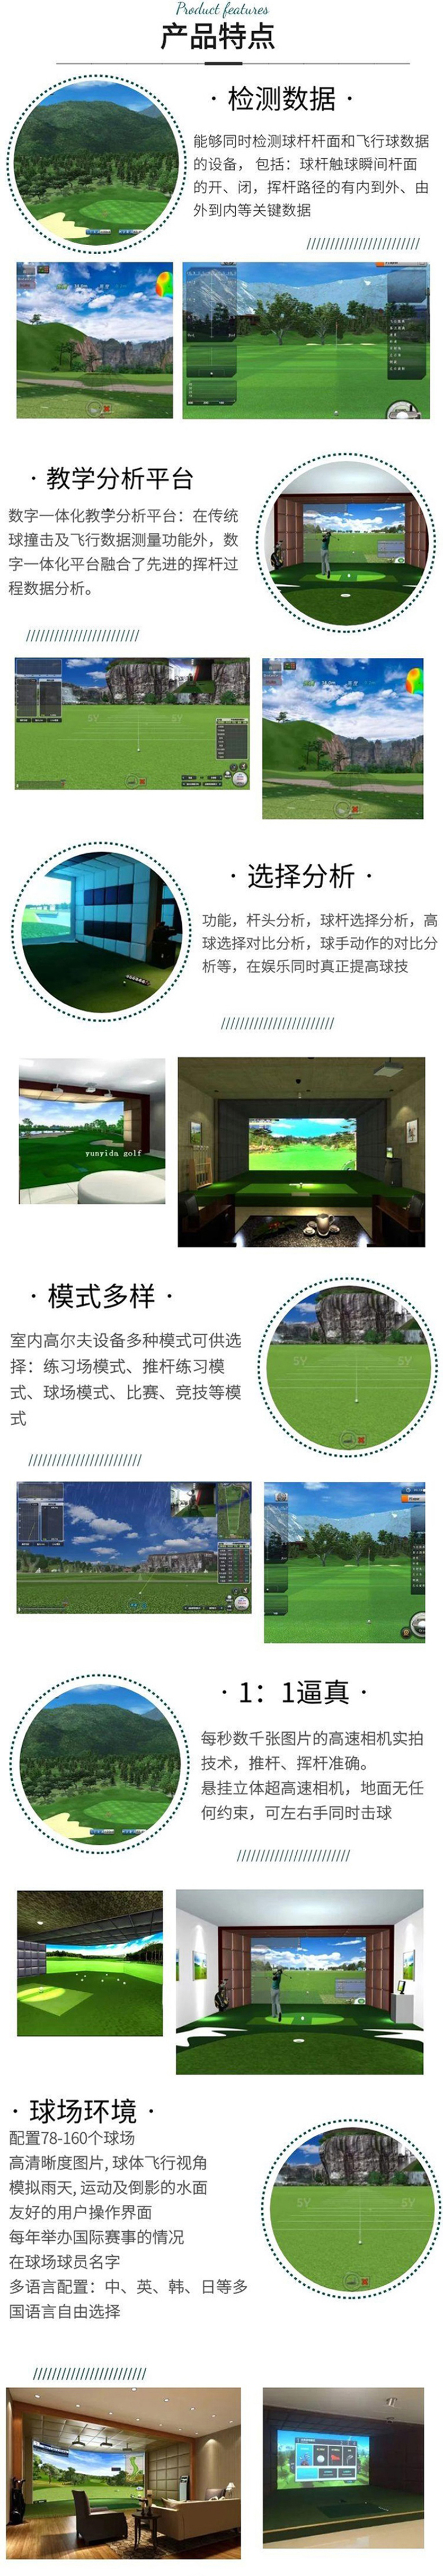 高尔夫模拟器品牌2.jpg